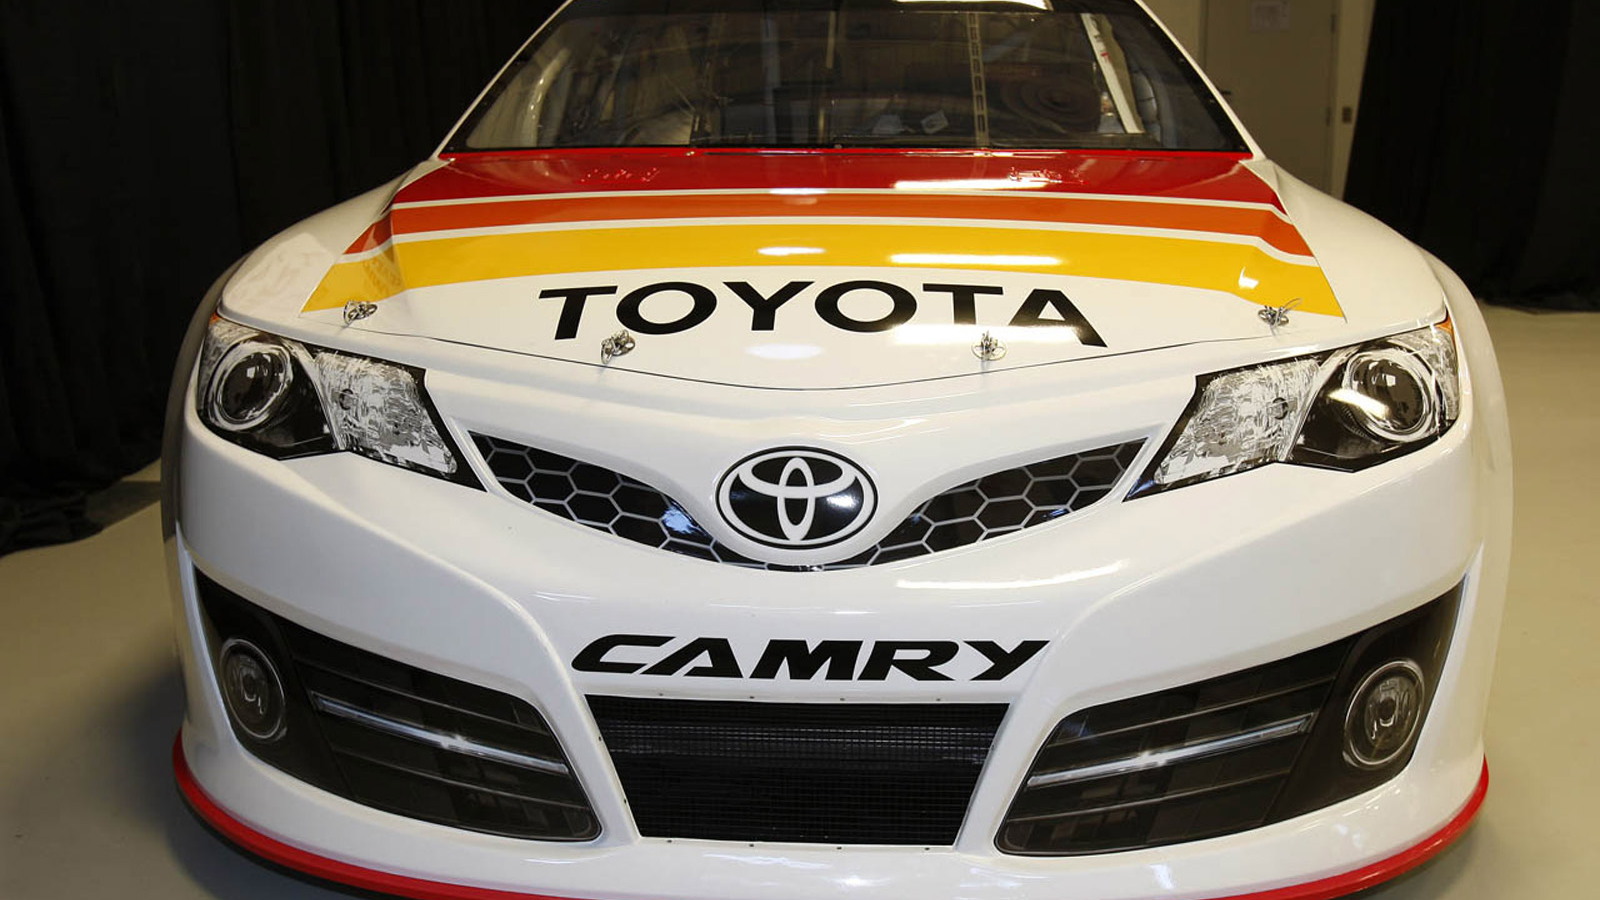 2013 Toyota Camry NASCAR Sprint Cup race car